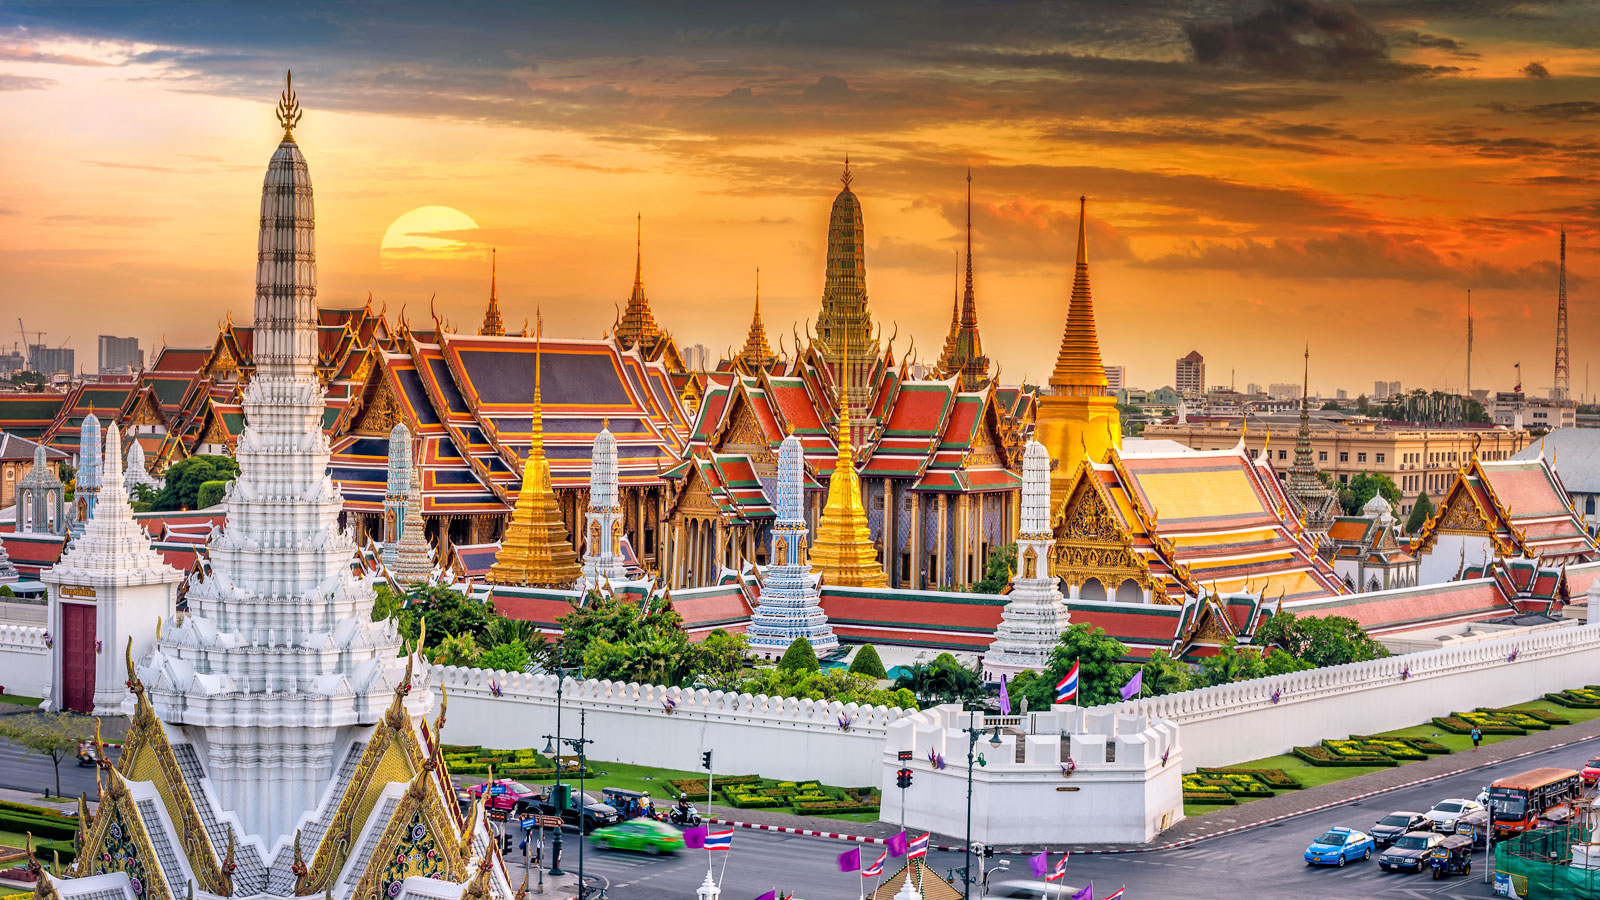 Đi du lịch Thái Lan nên mua gì? 37 đặc sản làm quà độc đáo xứ Chùa Vàng